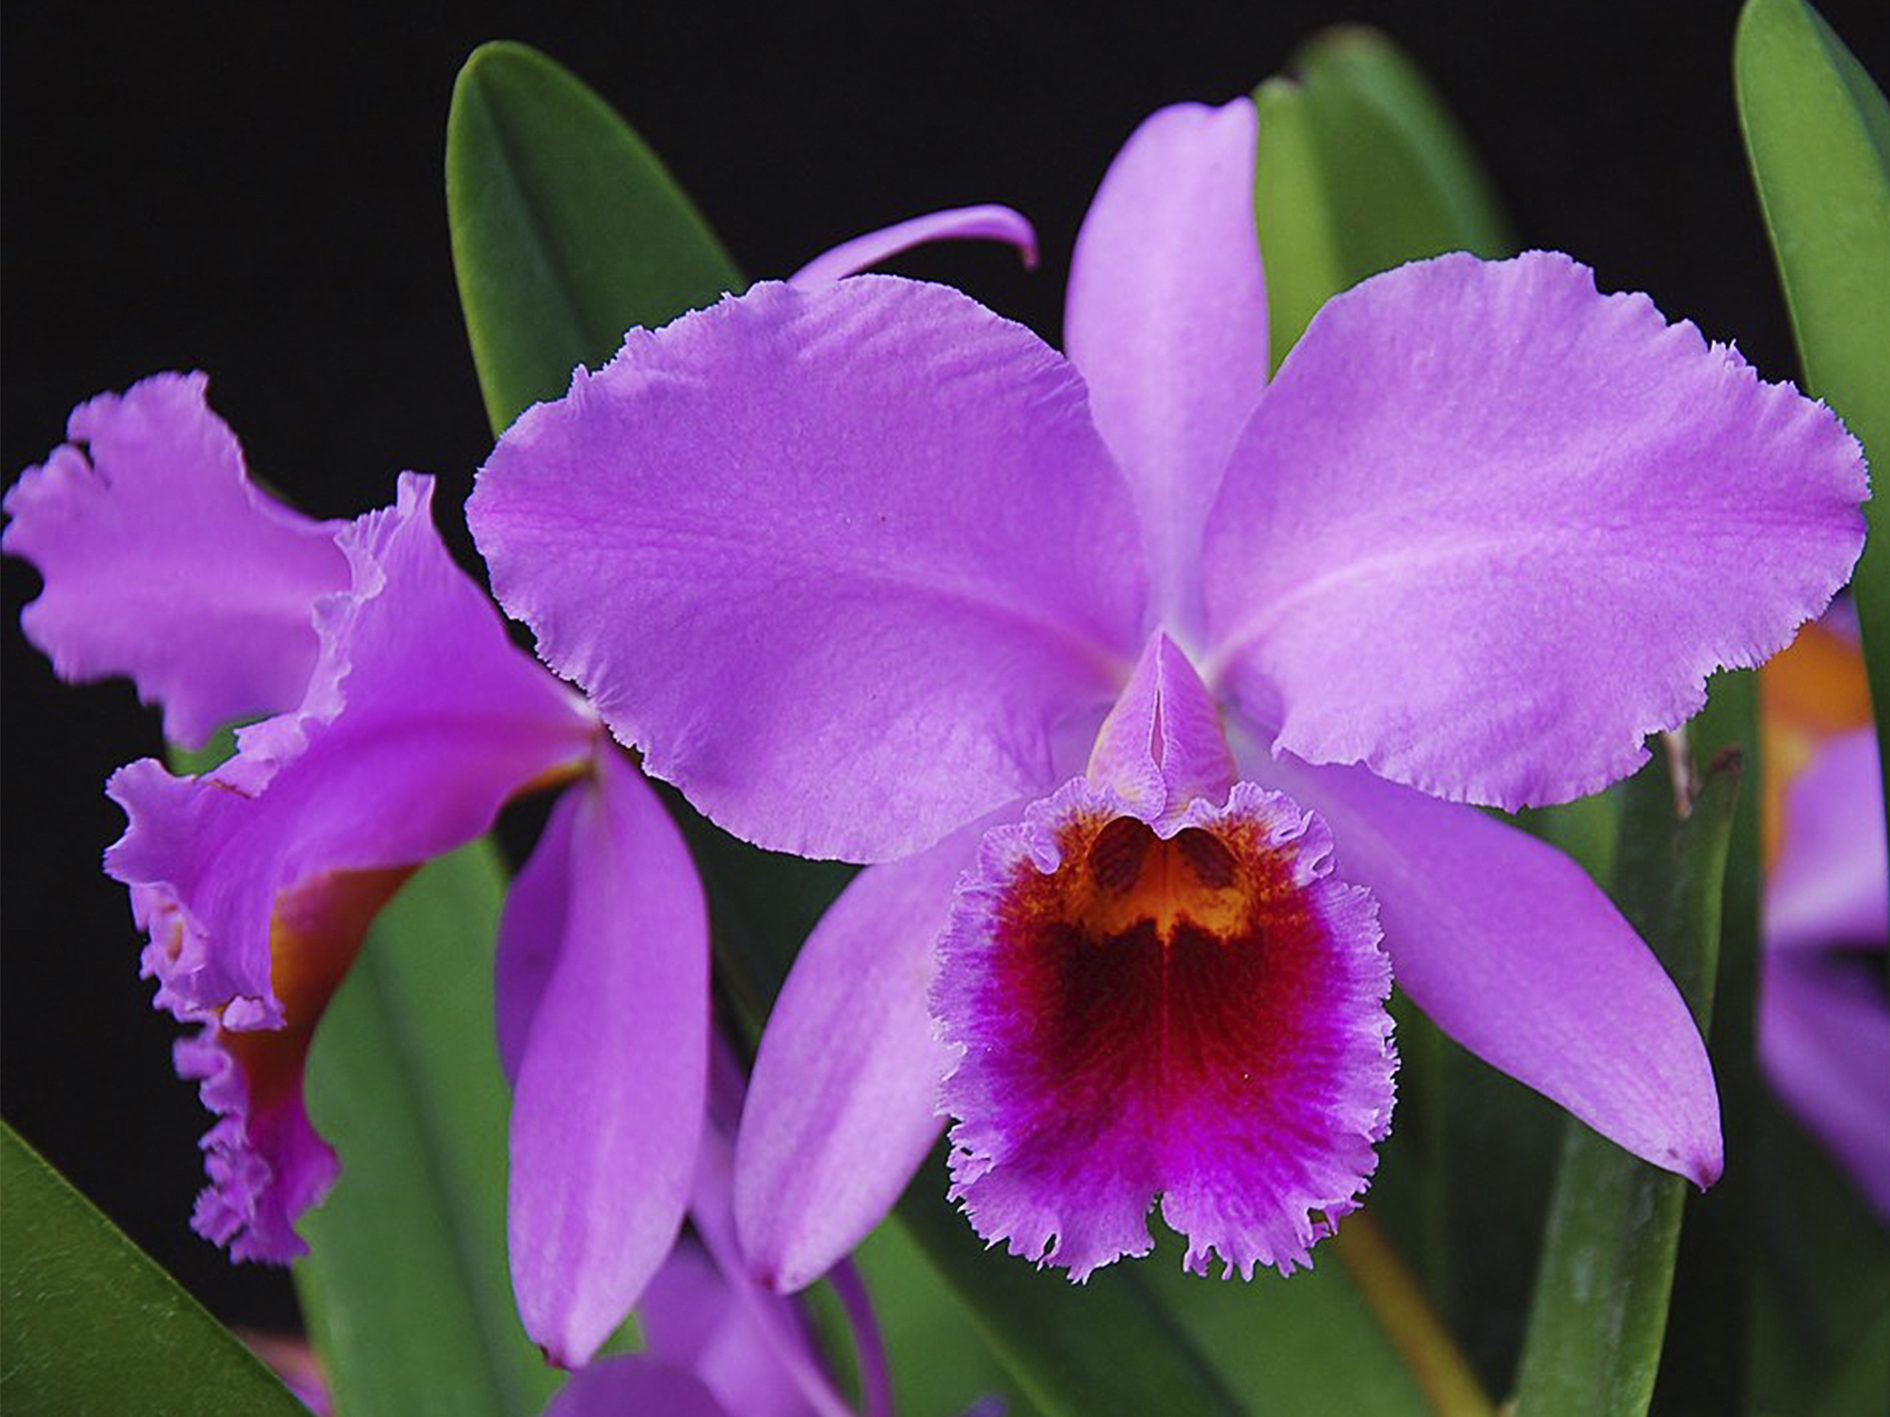 La orquídea, nuestra hermosa flor nacional • Teleamiga